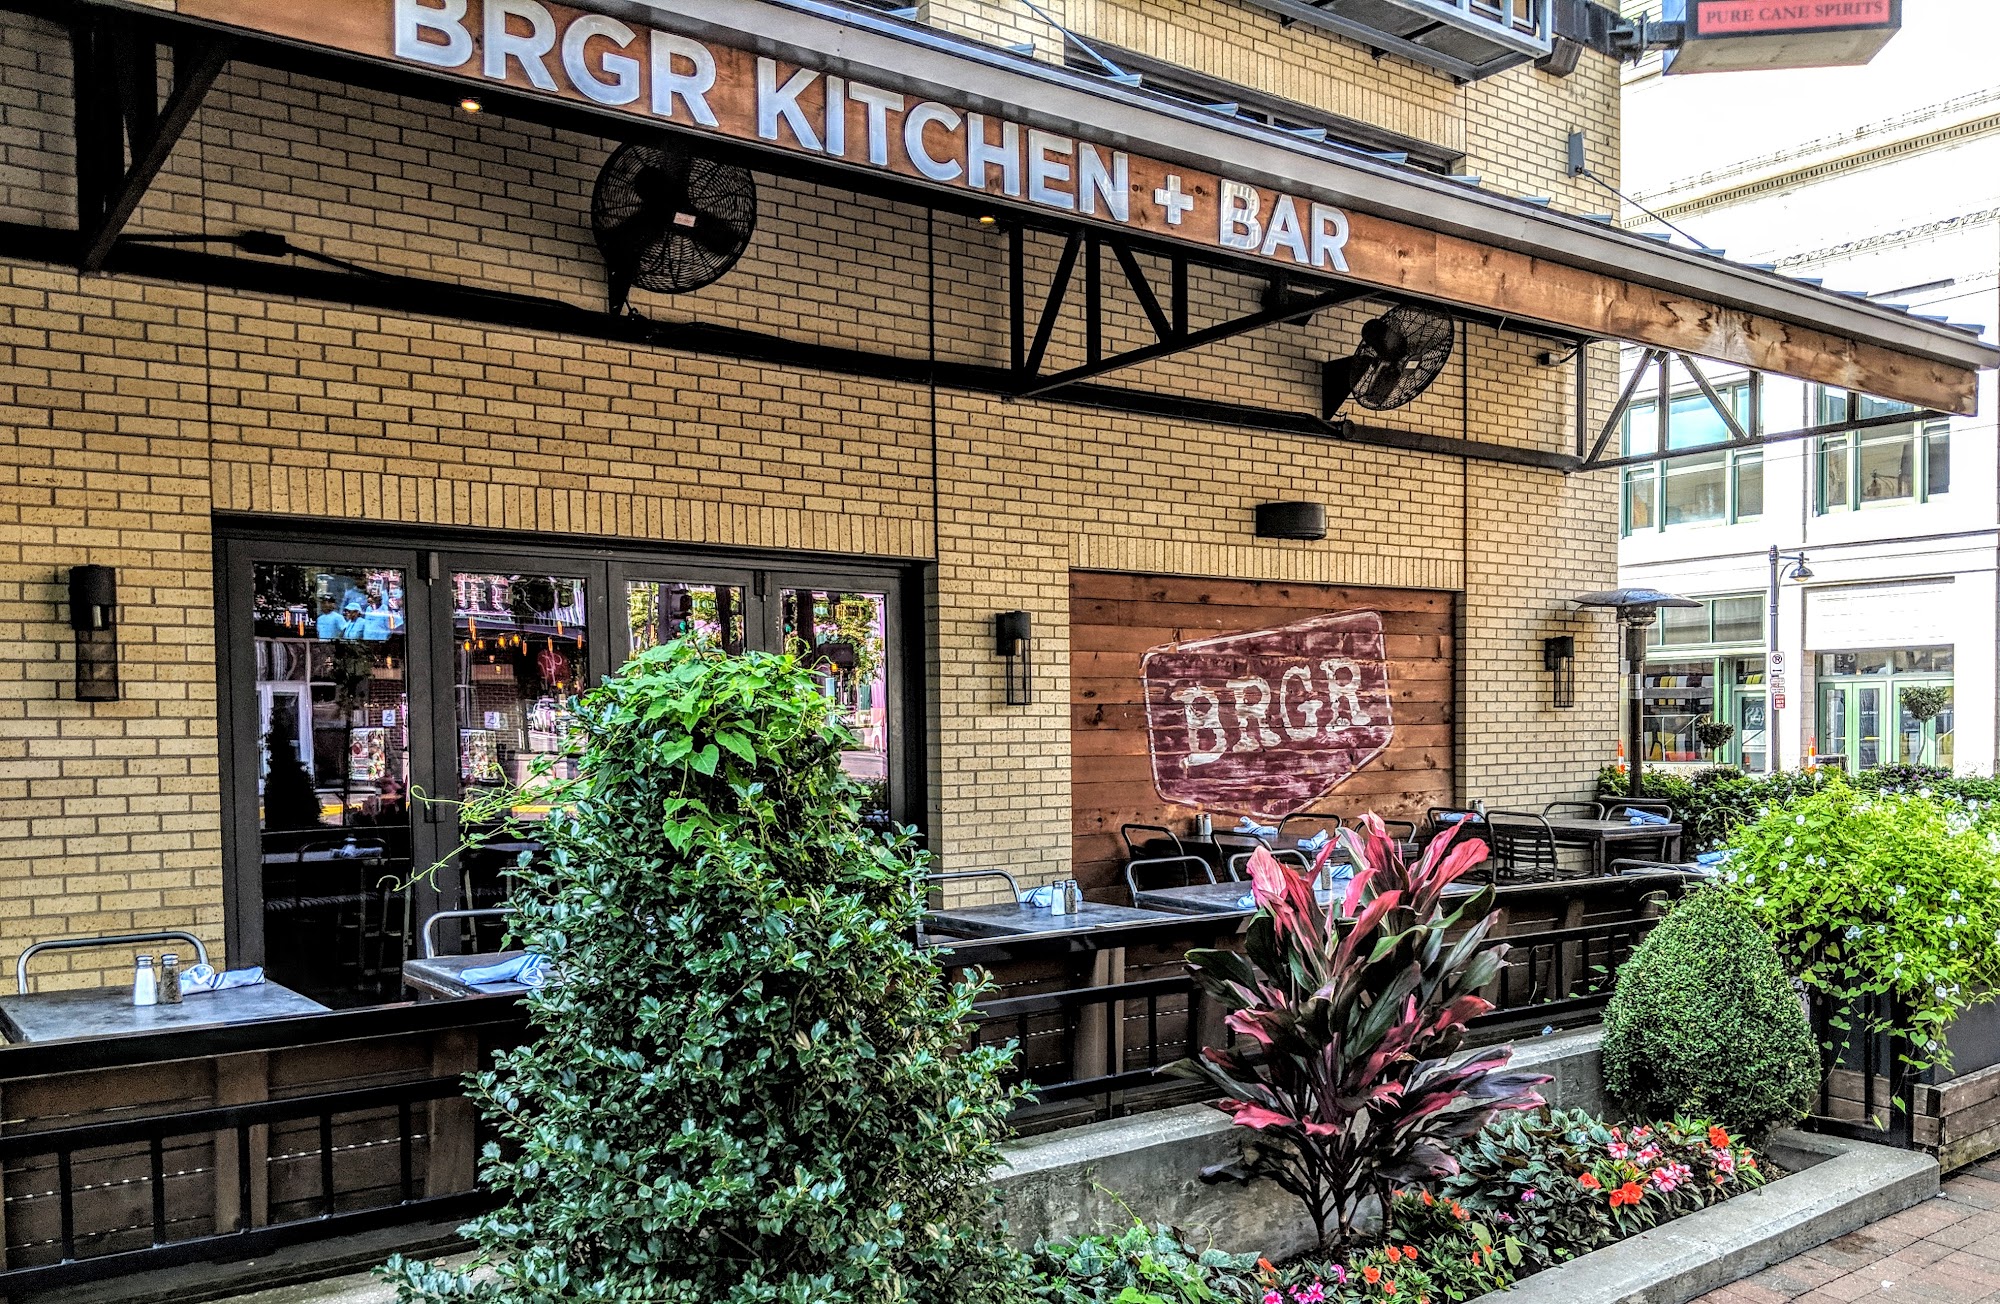 BRGR Kitchen + Bar